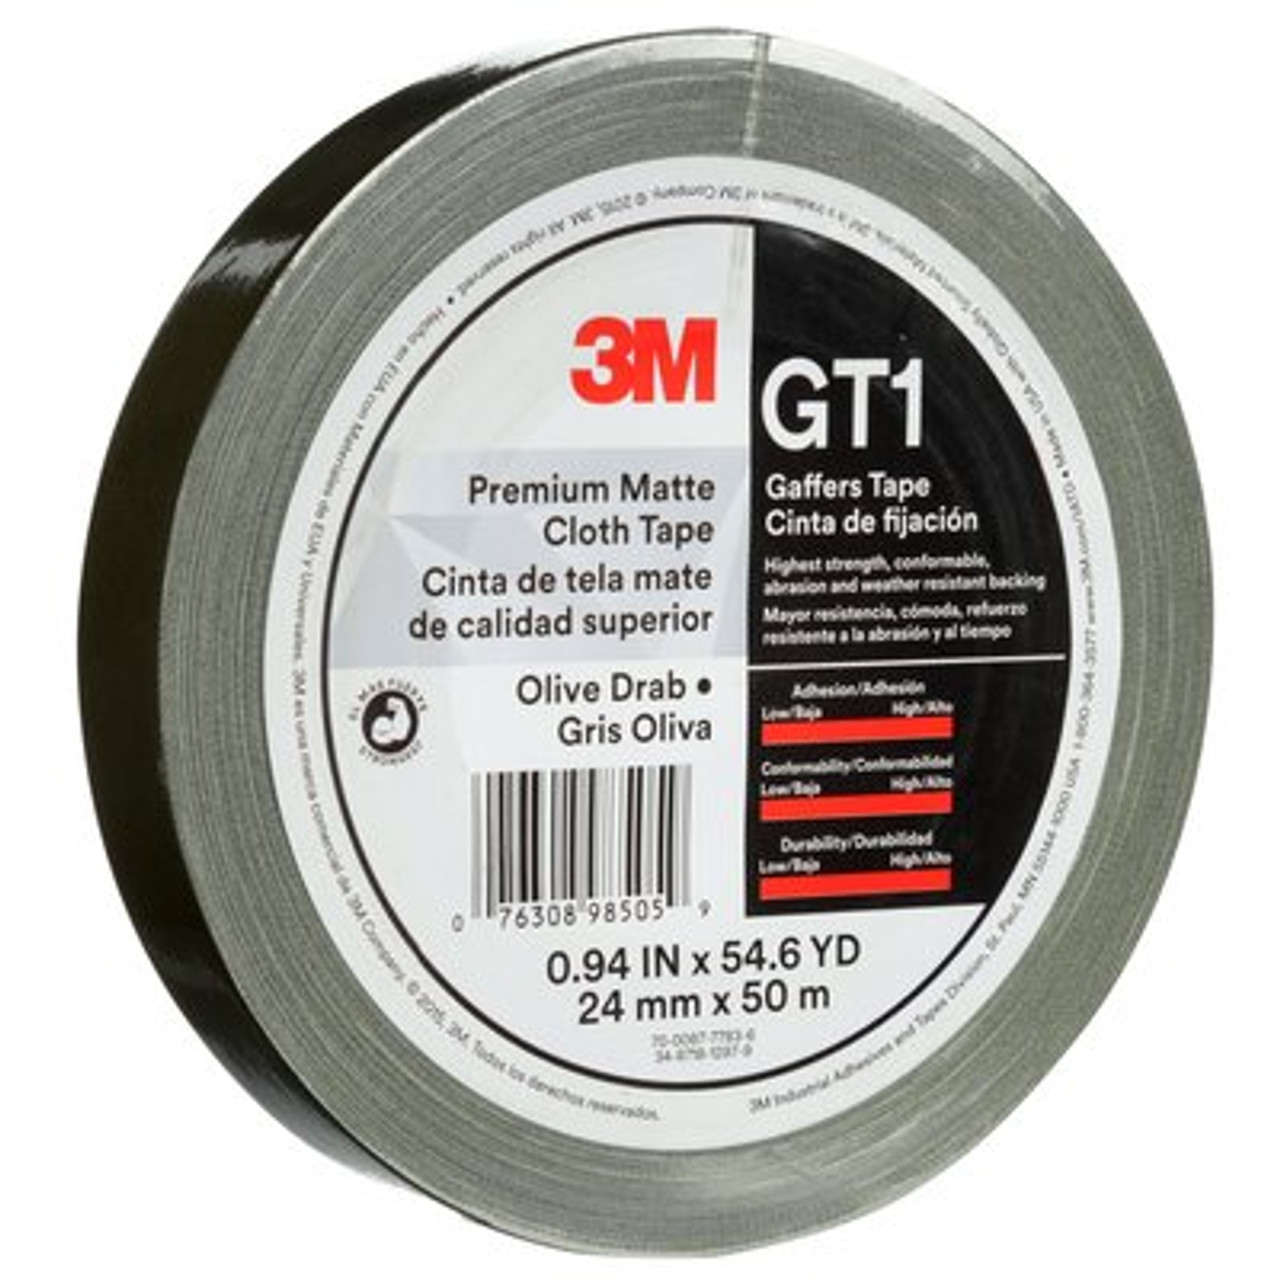 3M™ Premium Matte Cloth (Gaffers) Tape GT1, Olive Drab, 24 mm x 50 m, 11 mil